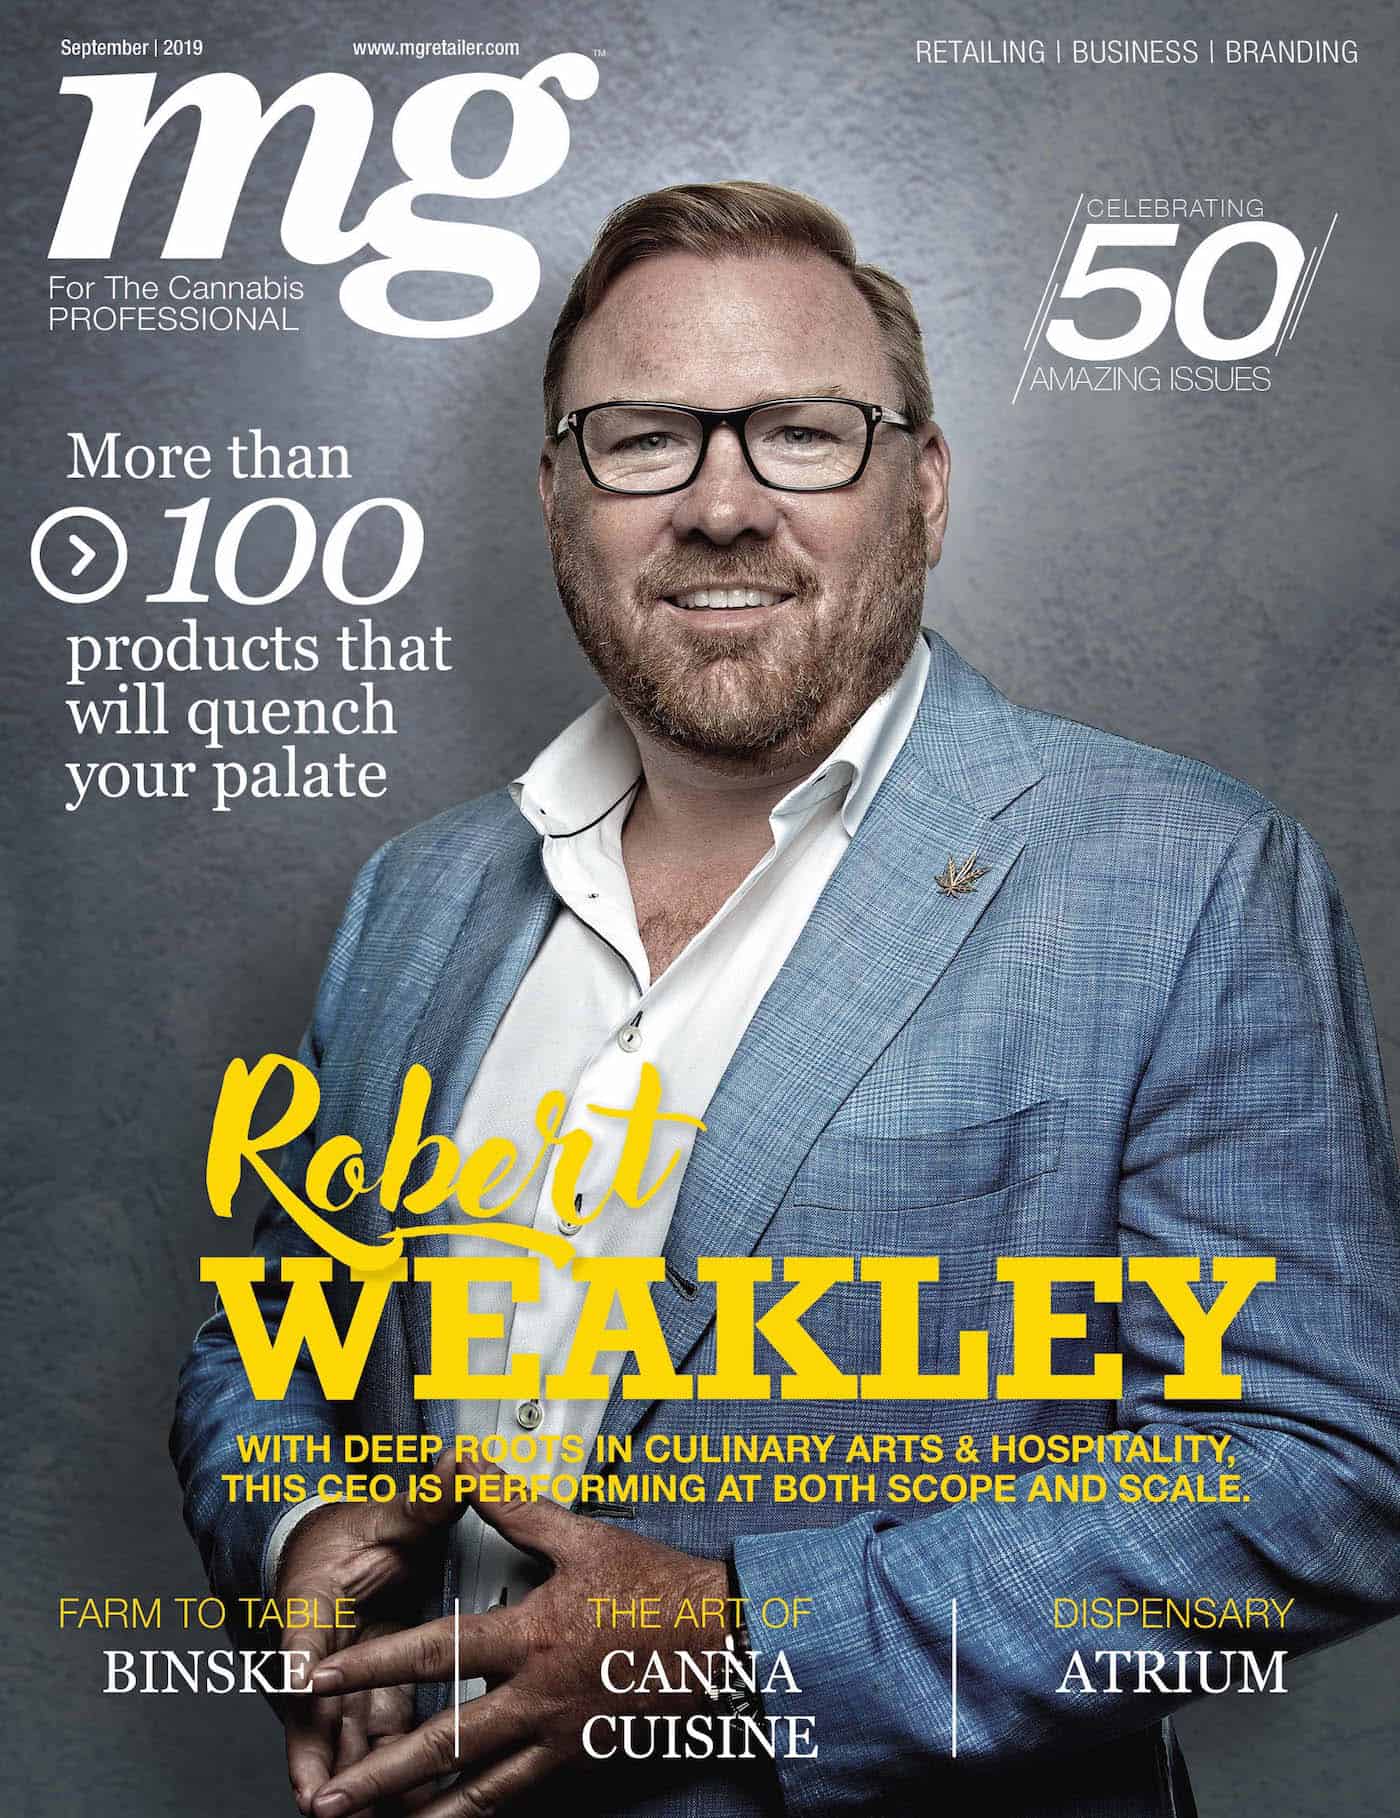 Robert Weakley September 2019 mg magazine cover